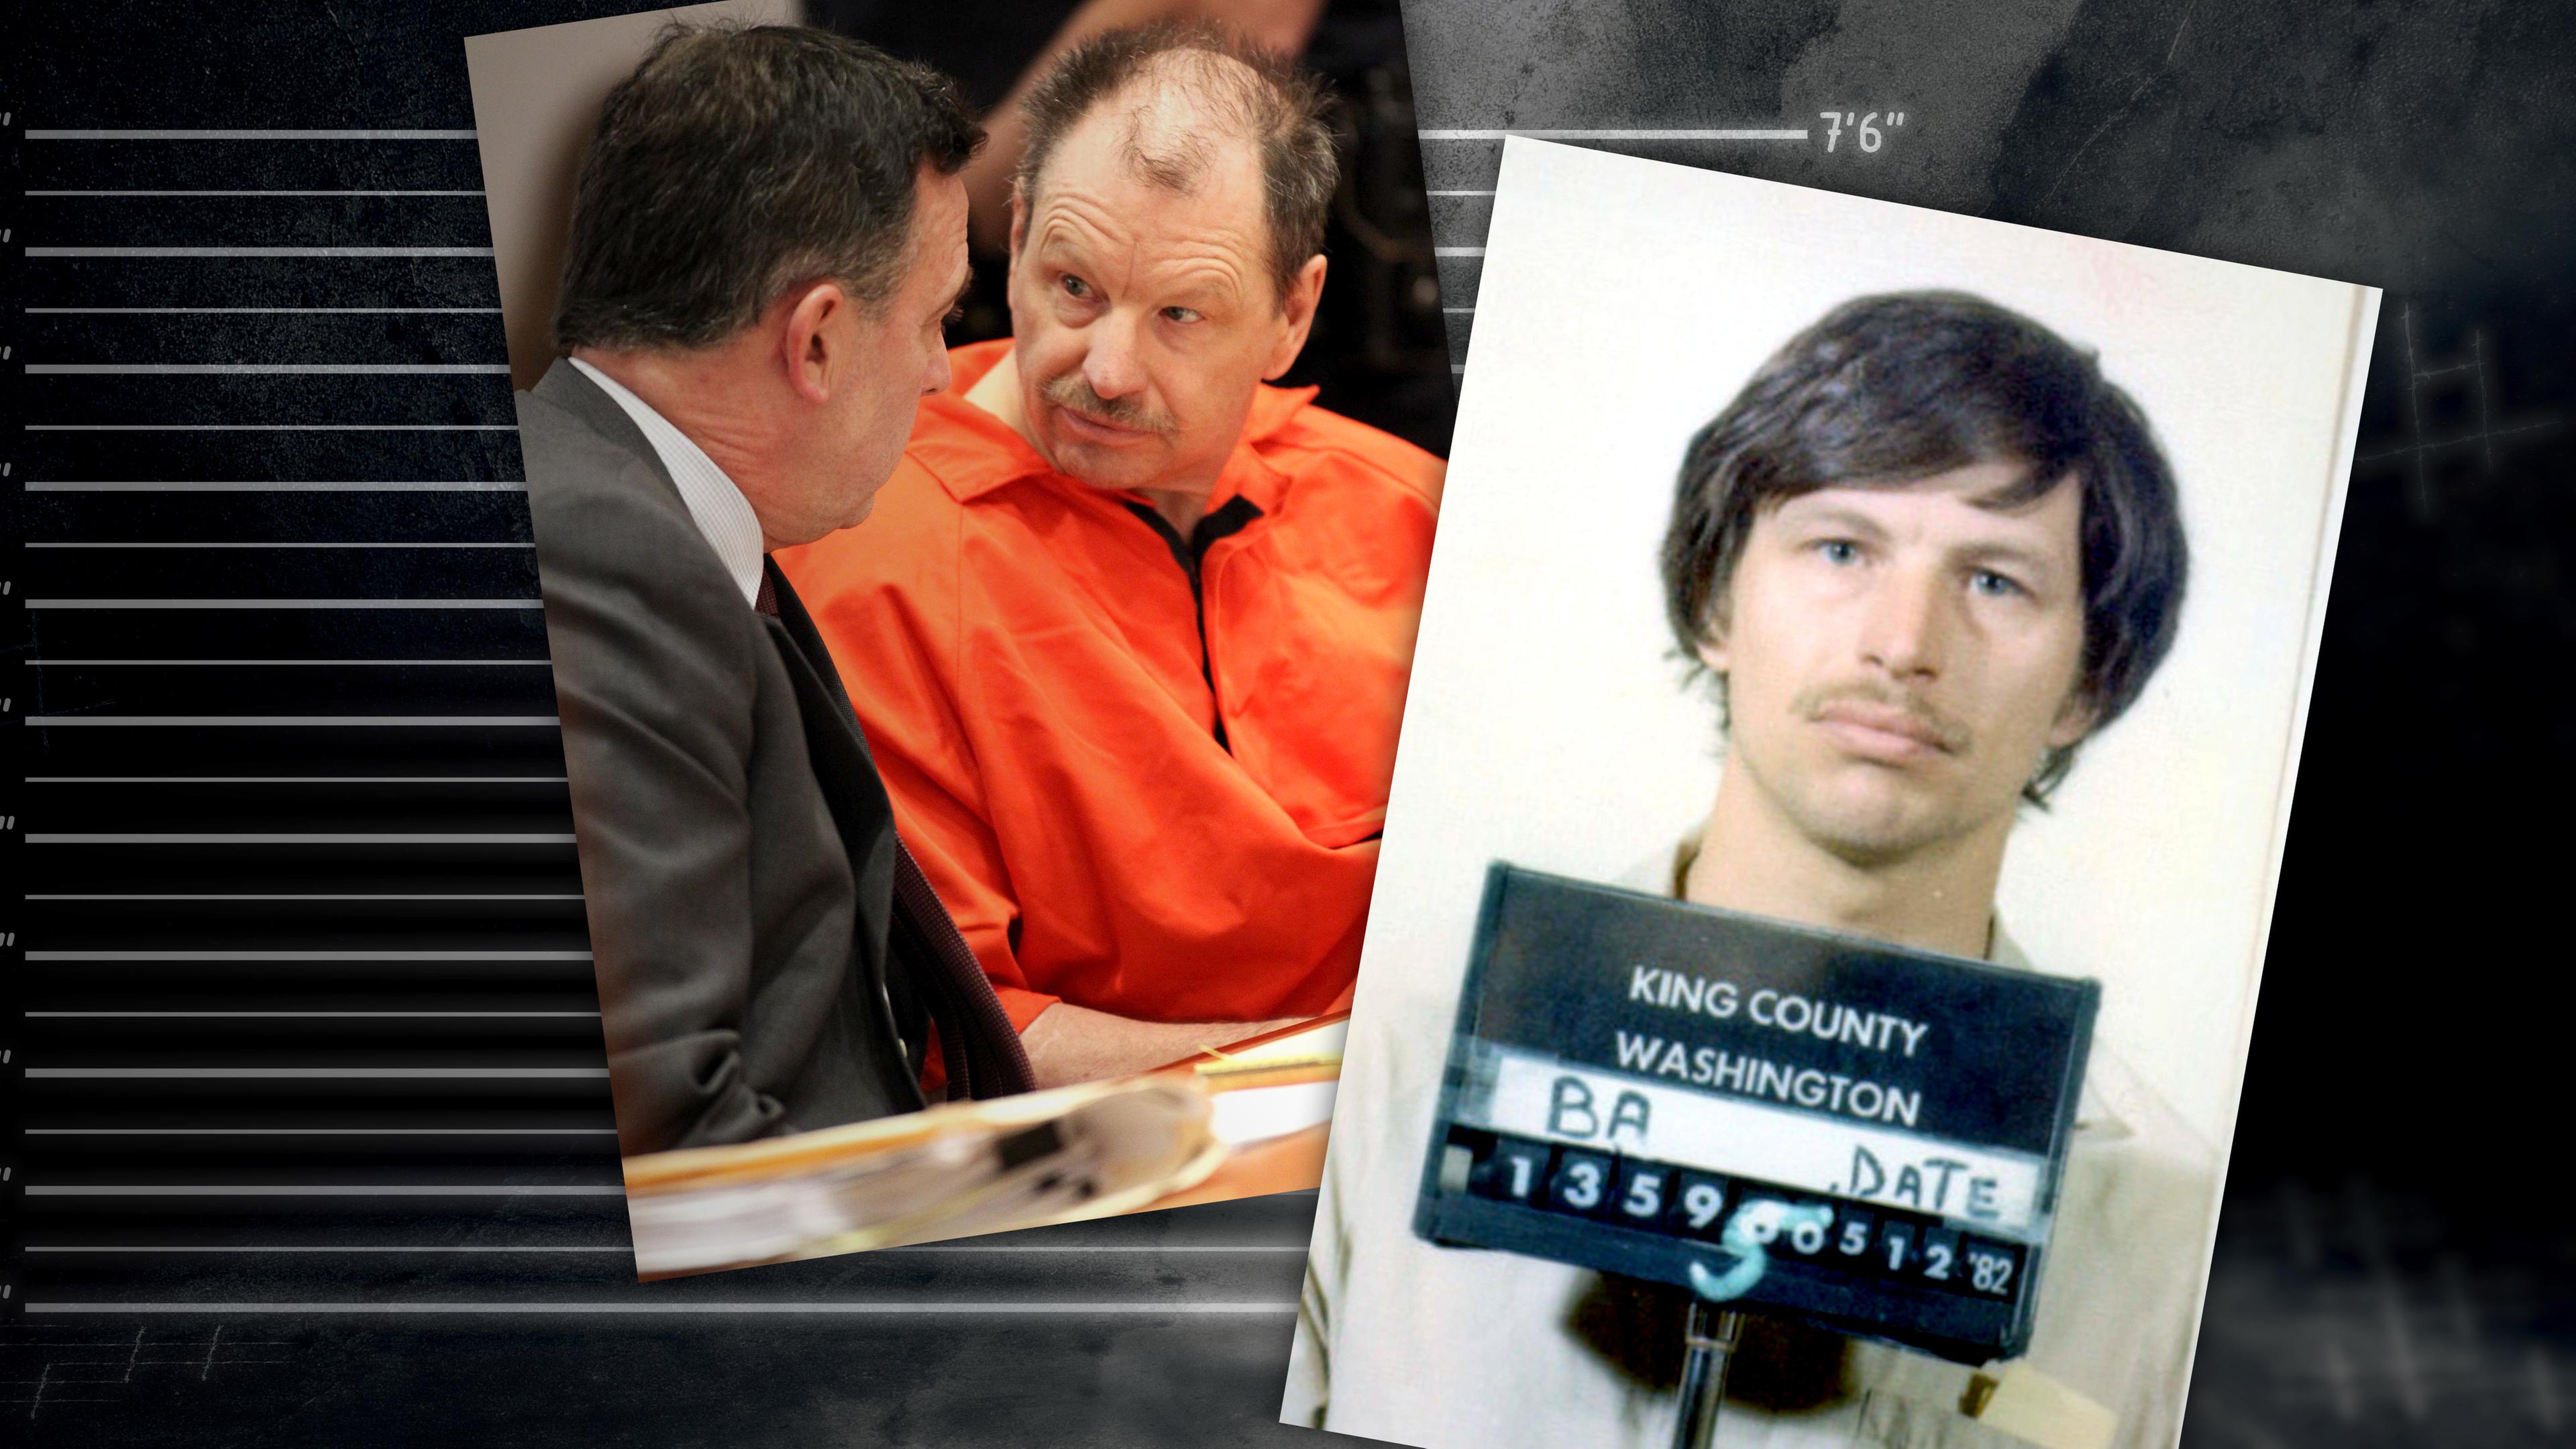 Montage: Polizeifoto von Gary Ridgway nach seiner Verhaftung, daneben ein Bild von ihm während seiner Gerichtsverhandlung.